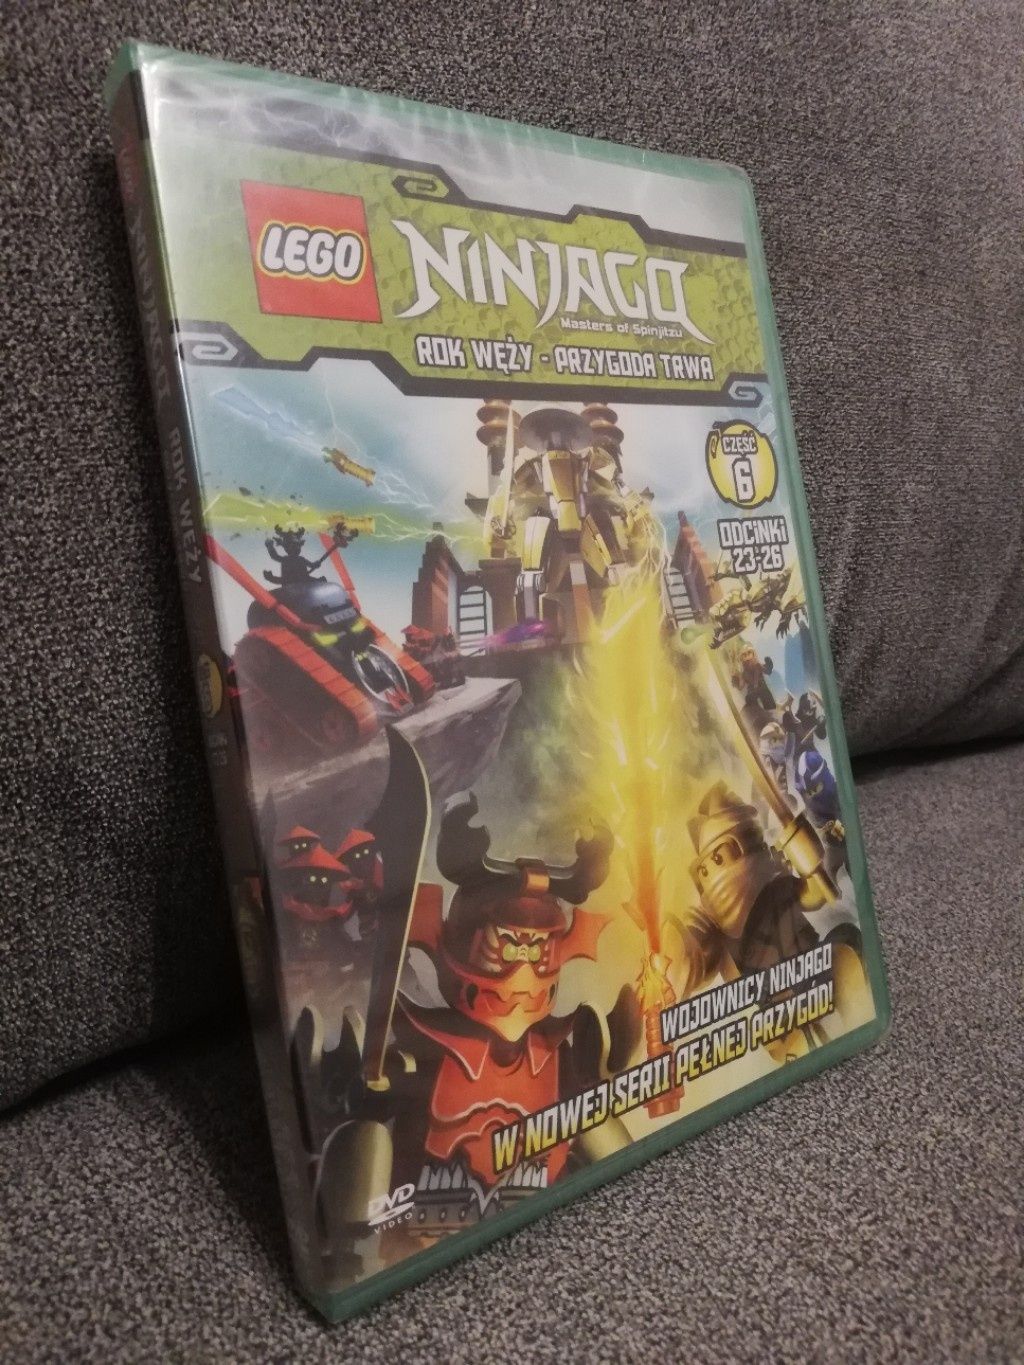 Lego Ninjago część 6 DVD rok węży - przygoda trwa nówka w folii